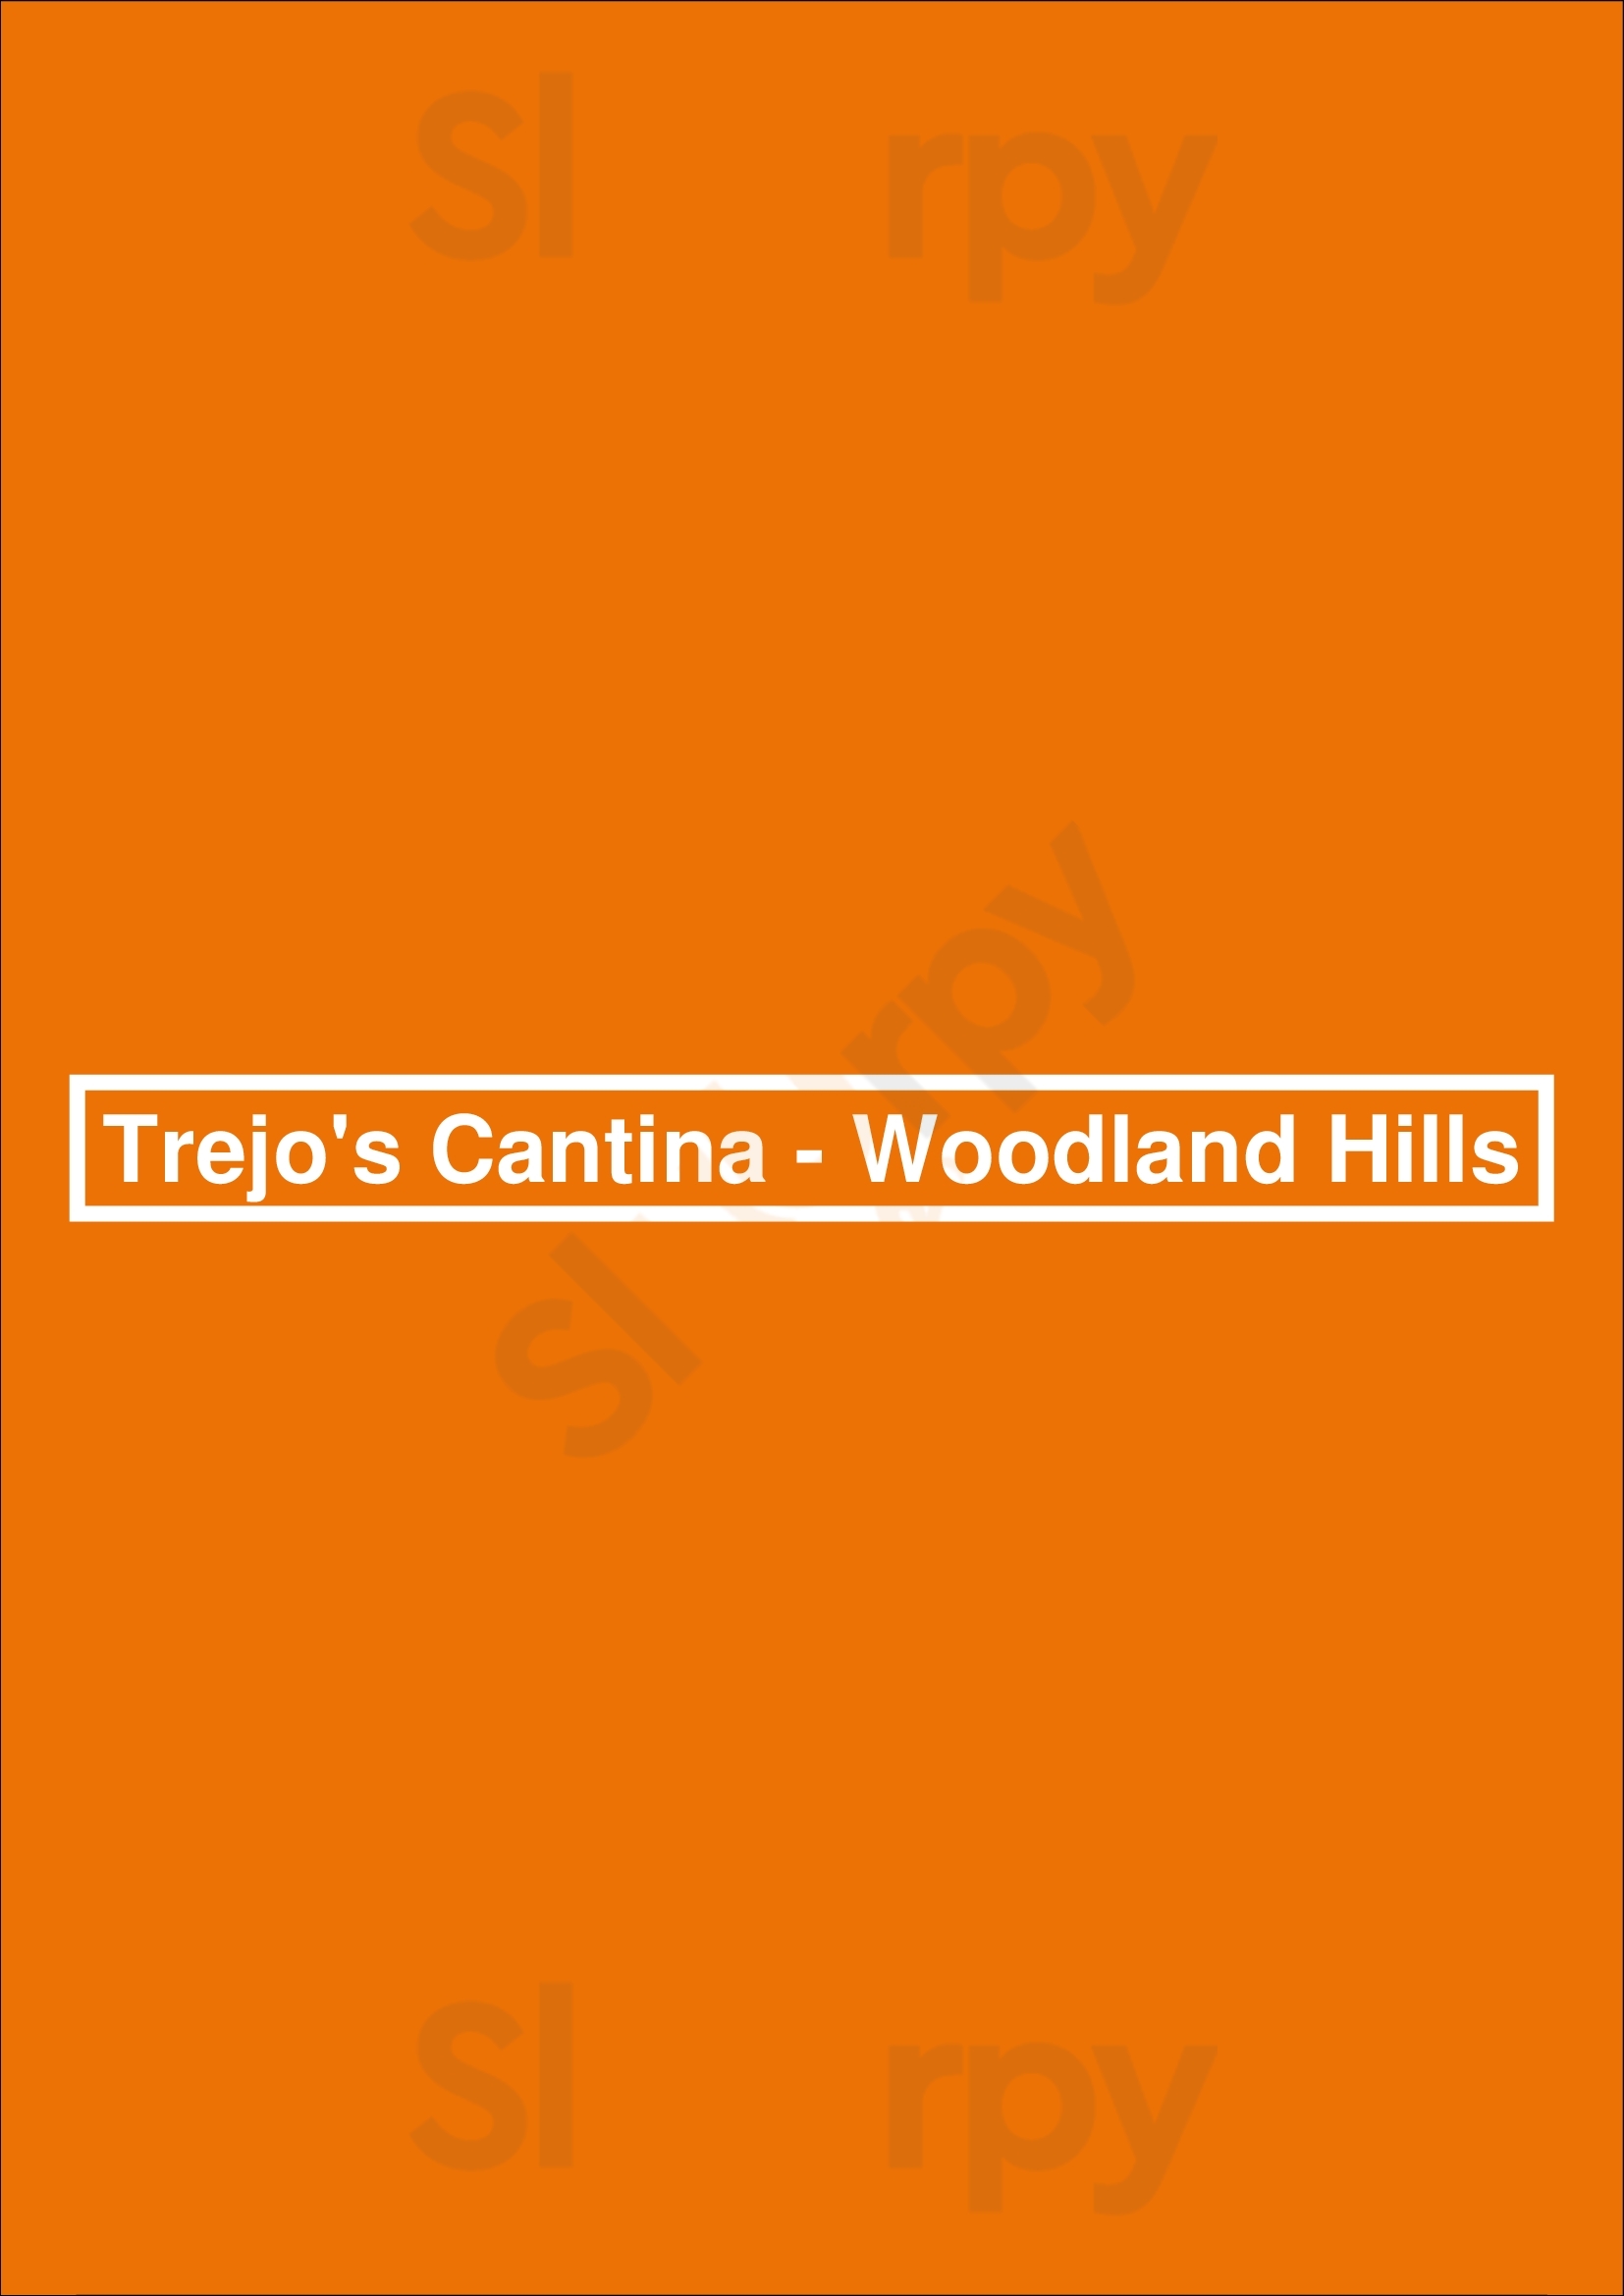 Trejo's Cantina - Woodland Hills Los Angeles Menu - 1